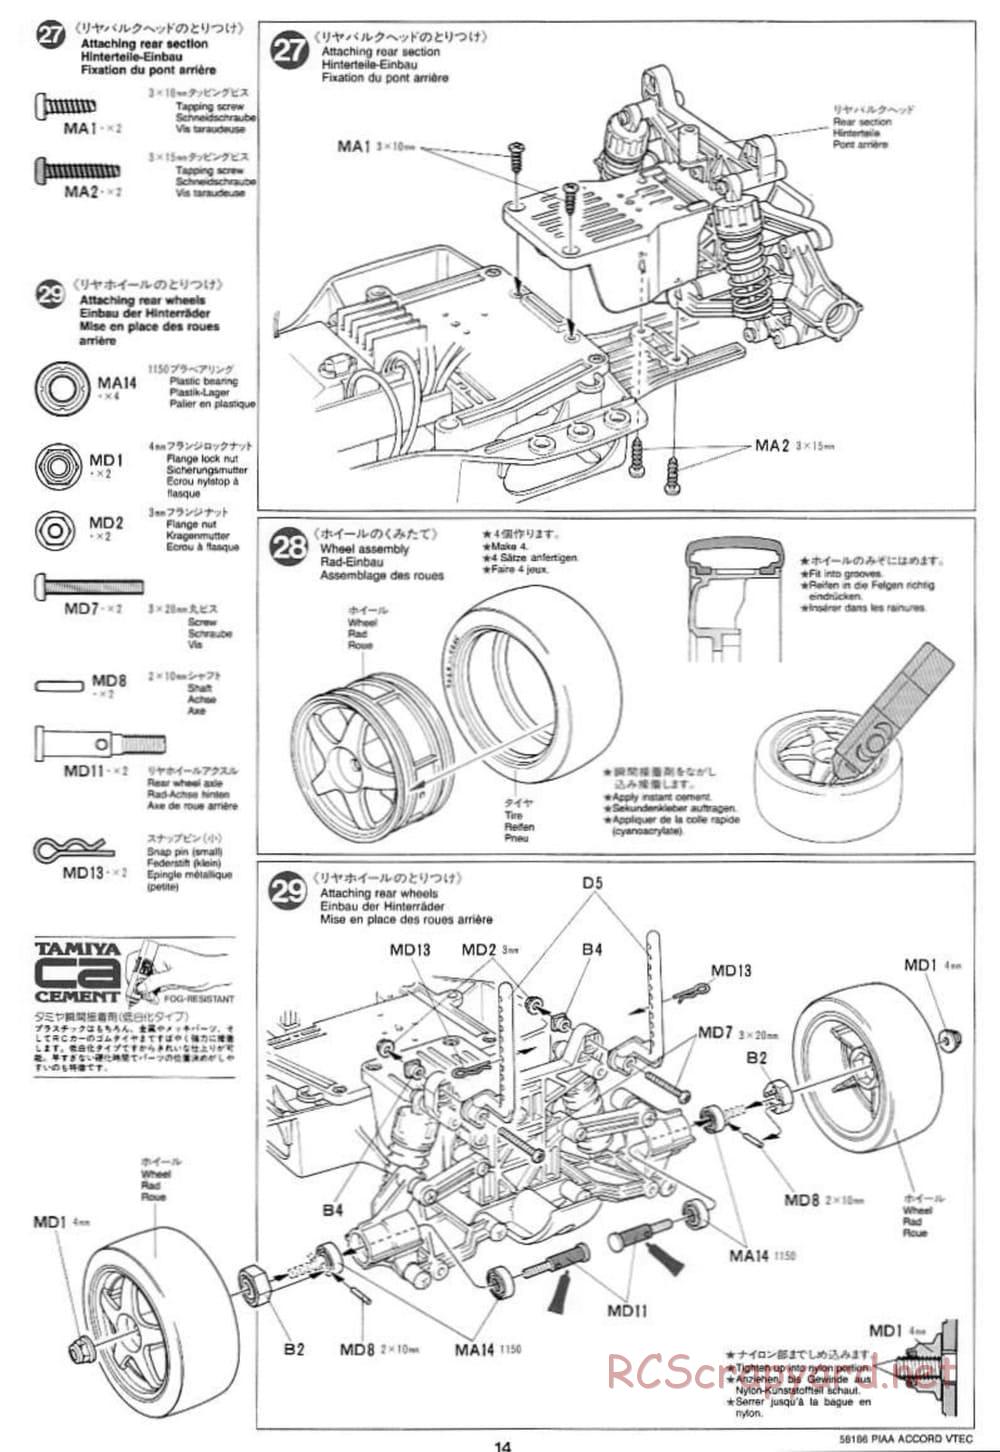 Tamiya - PIAA Accord VTEC - FF-01 Chassis - Manual - Page 14